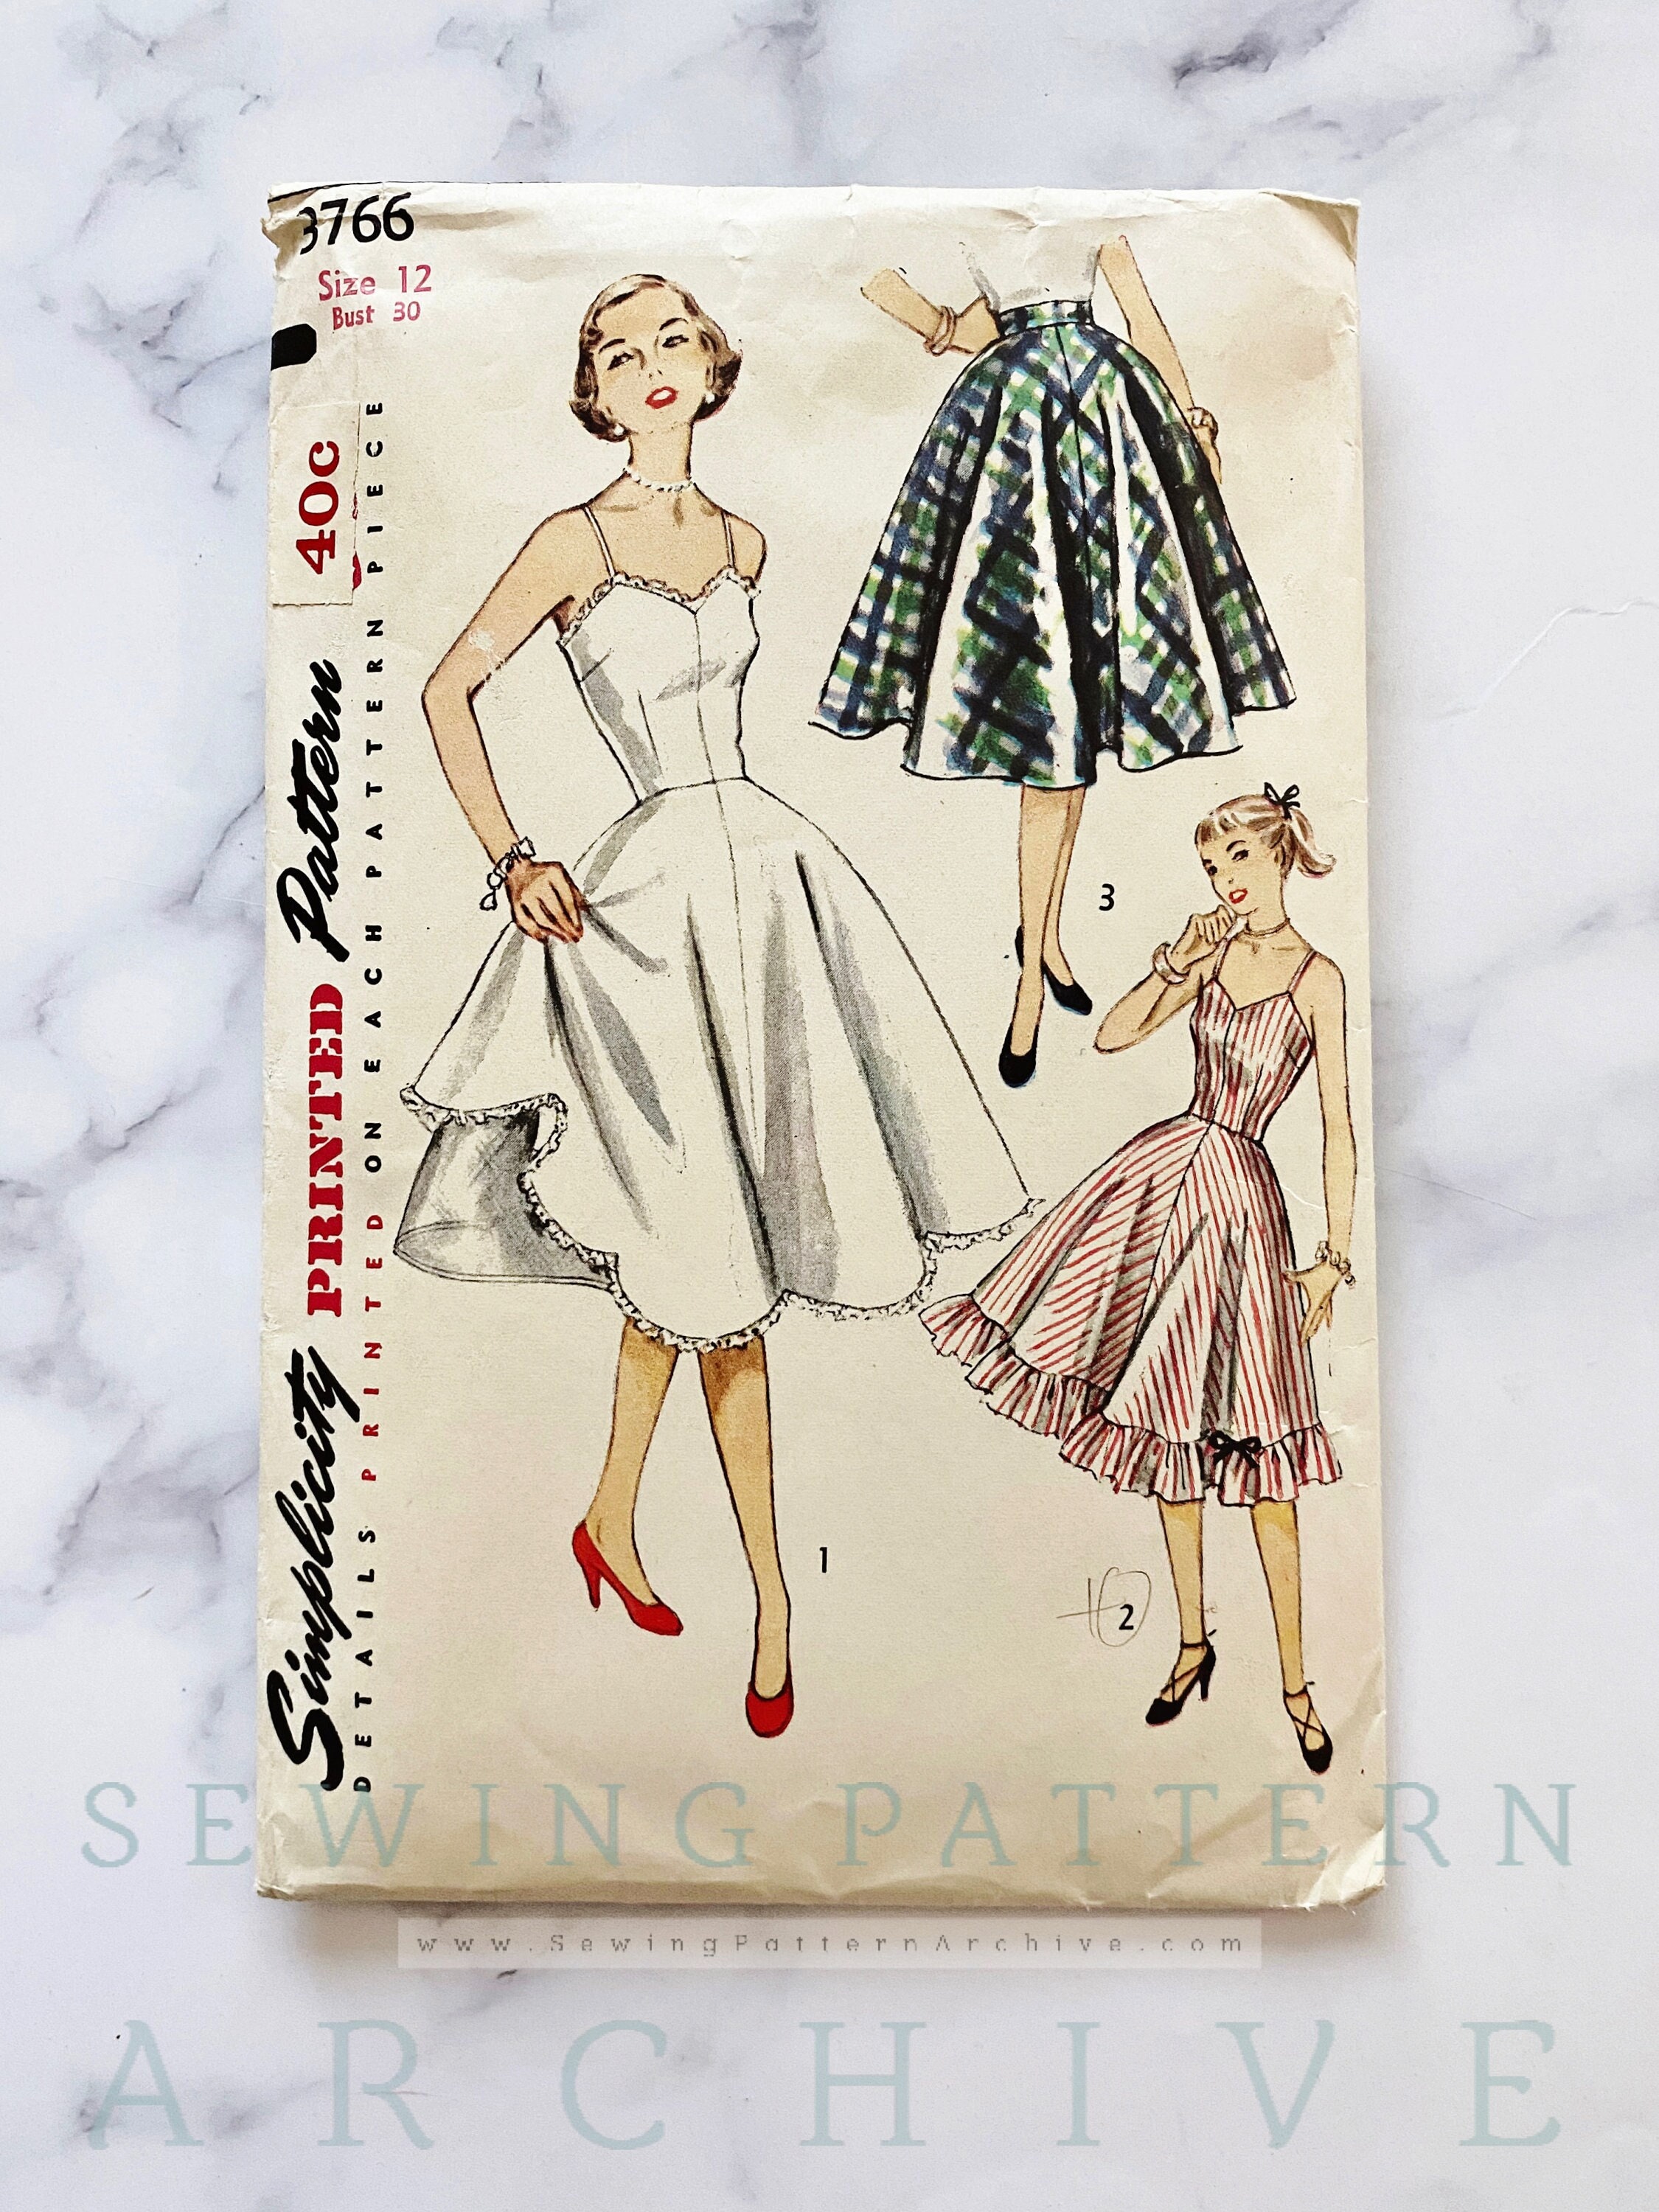 1950s Petticoat - Etsy